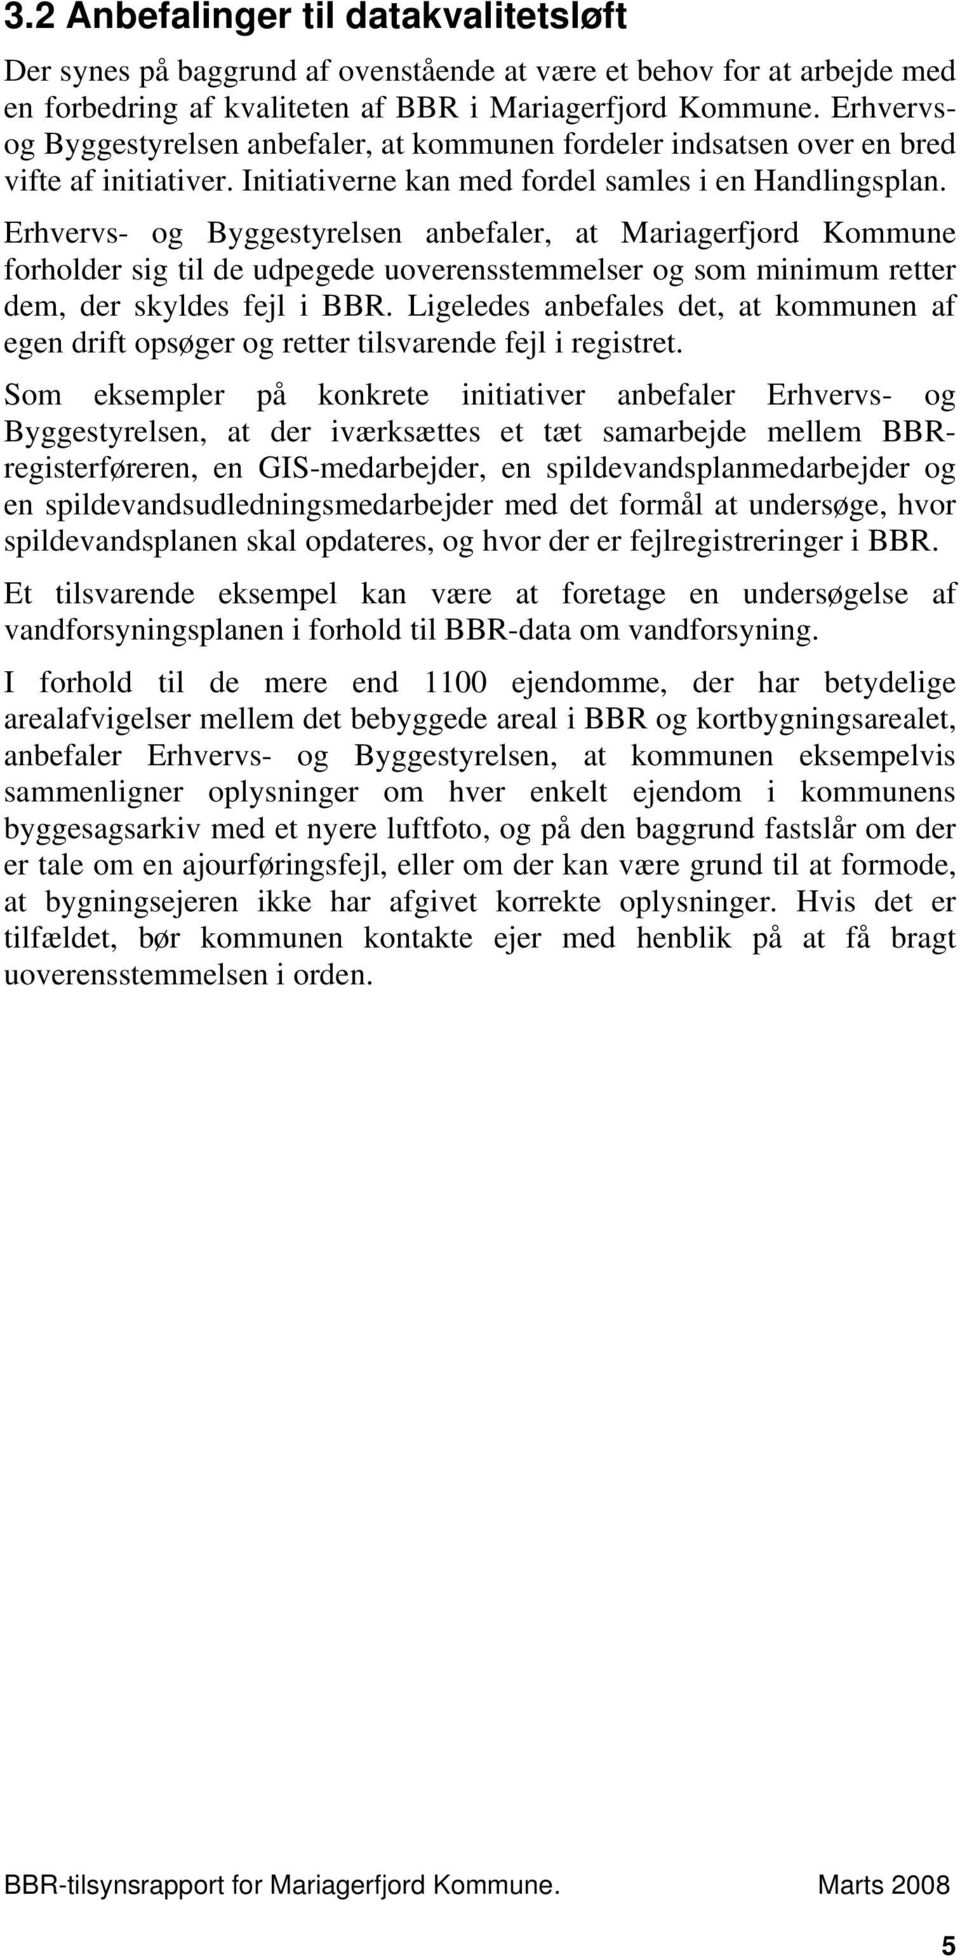 Erhvervs- og Byggestyrelsen anbefaler, at Mariagerfjord Kommune forholder sig til de udpegede uoverensstemmelser og som minimum retter dem, der skyldes fejl i BBR.